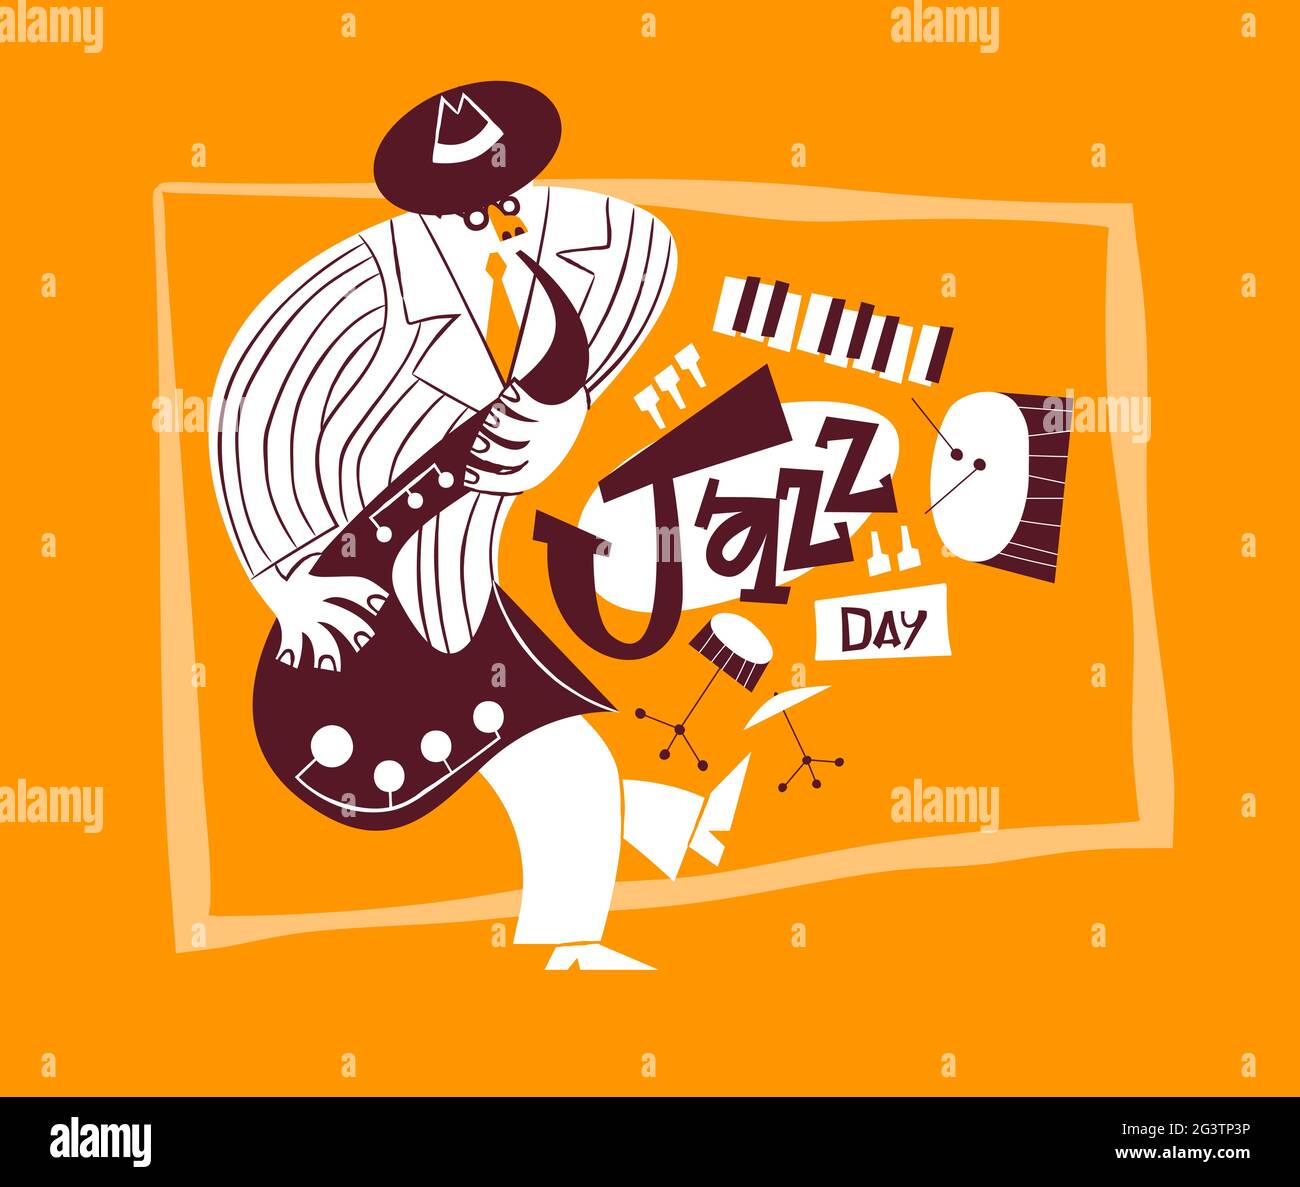 Jazz Day Grußkarte Illustration von Hand gezeichnet Cartoon Mann spielen Saxophon. Retro Mitte des Jahrhunderts Band-Instrumente und lustige Musiker Charakter für ein Stock Vektor